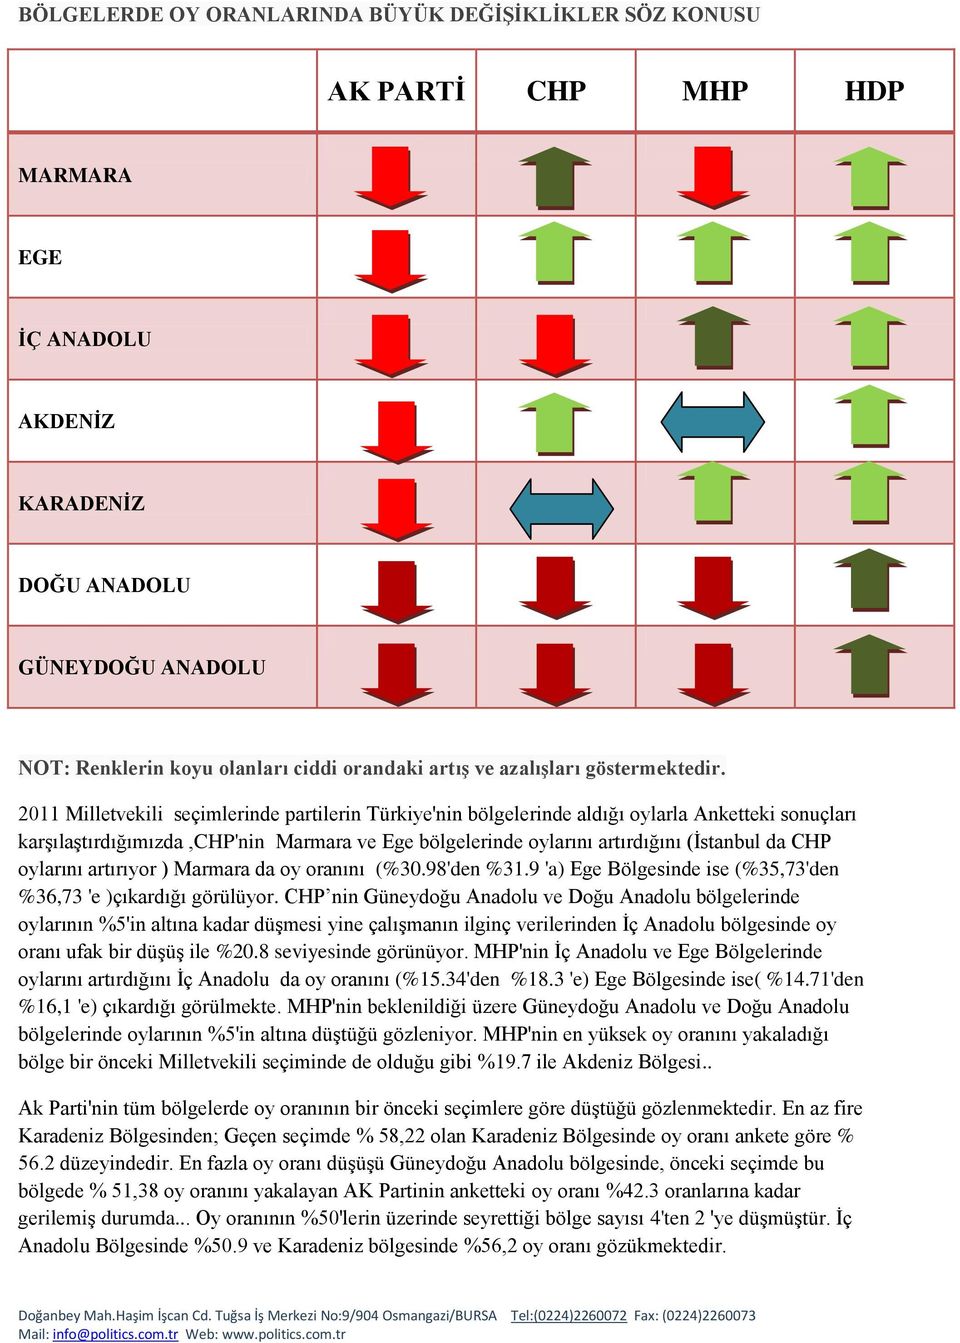 2011 Milletvekili seçimlerinde partilerin Türkiye'nin bölgelerinde aldığı oylarla Anketteki sonuçları karşılaştırdığımızda,chp'nin Marmara ve Ege bölgelerinde oylarını artırdığını (İstanbul da CHP